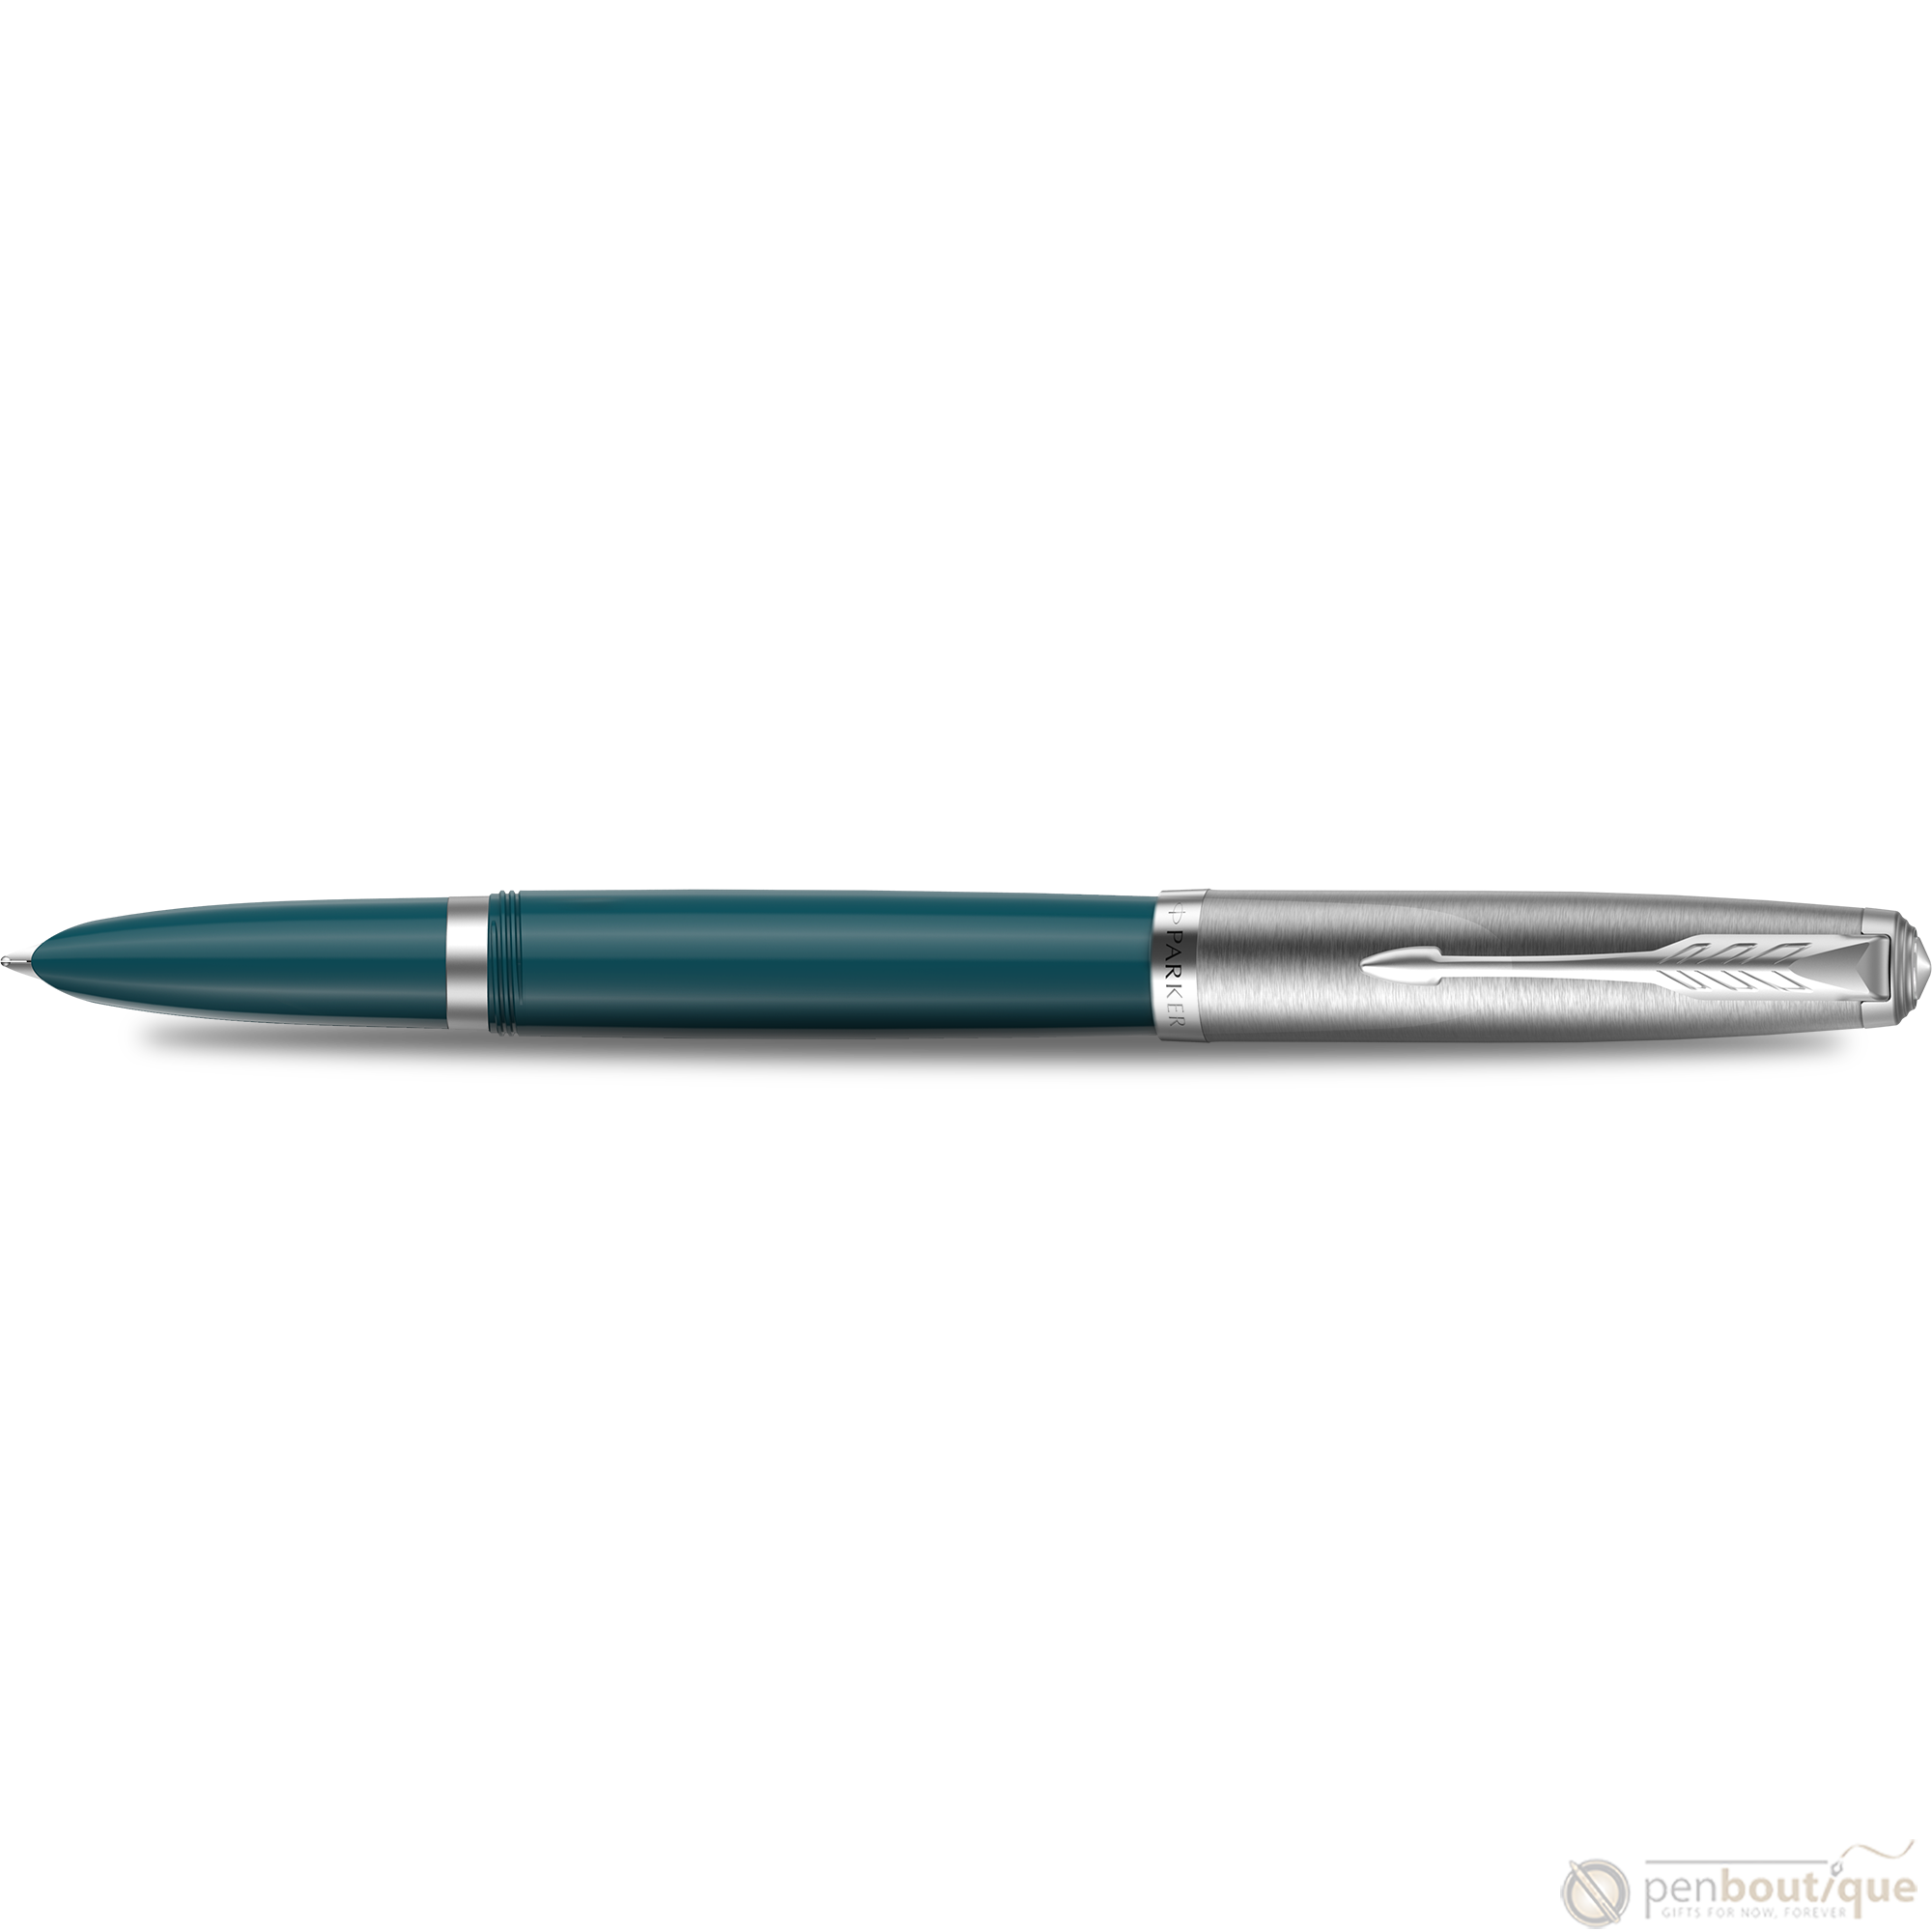 Voorstad publiek Trouw Parker 51 Next Generation Fountain Pen - Teal Blue - Chrome Trim - Pen  Boutique Ltd